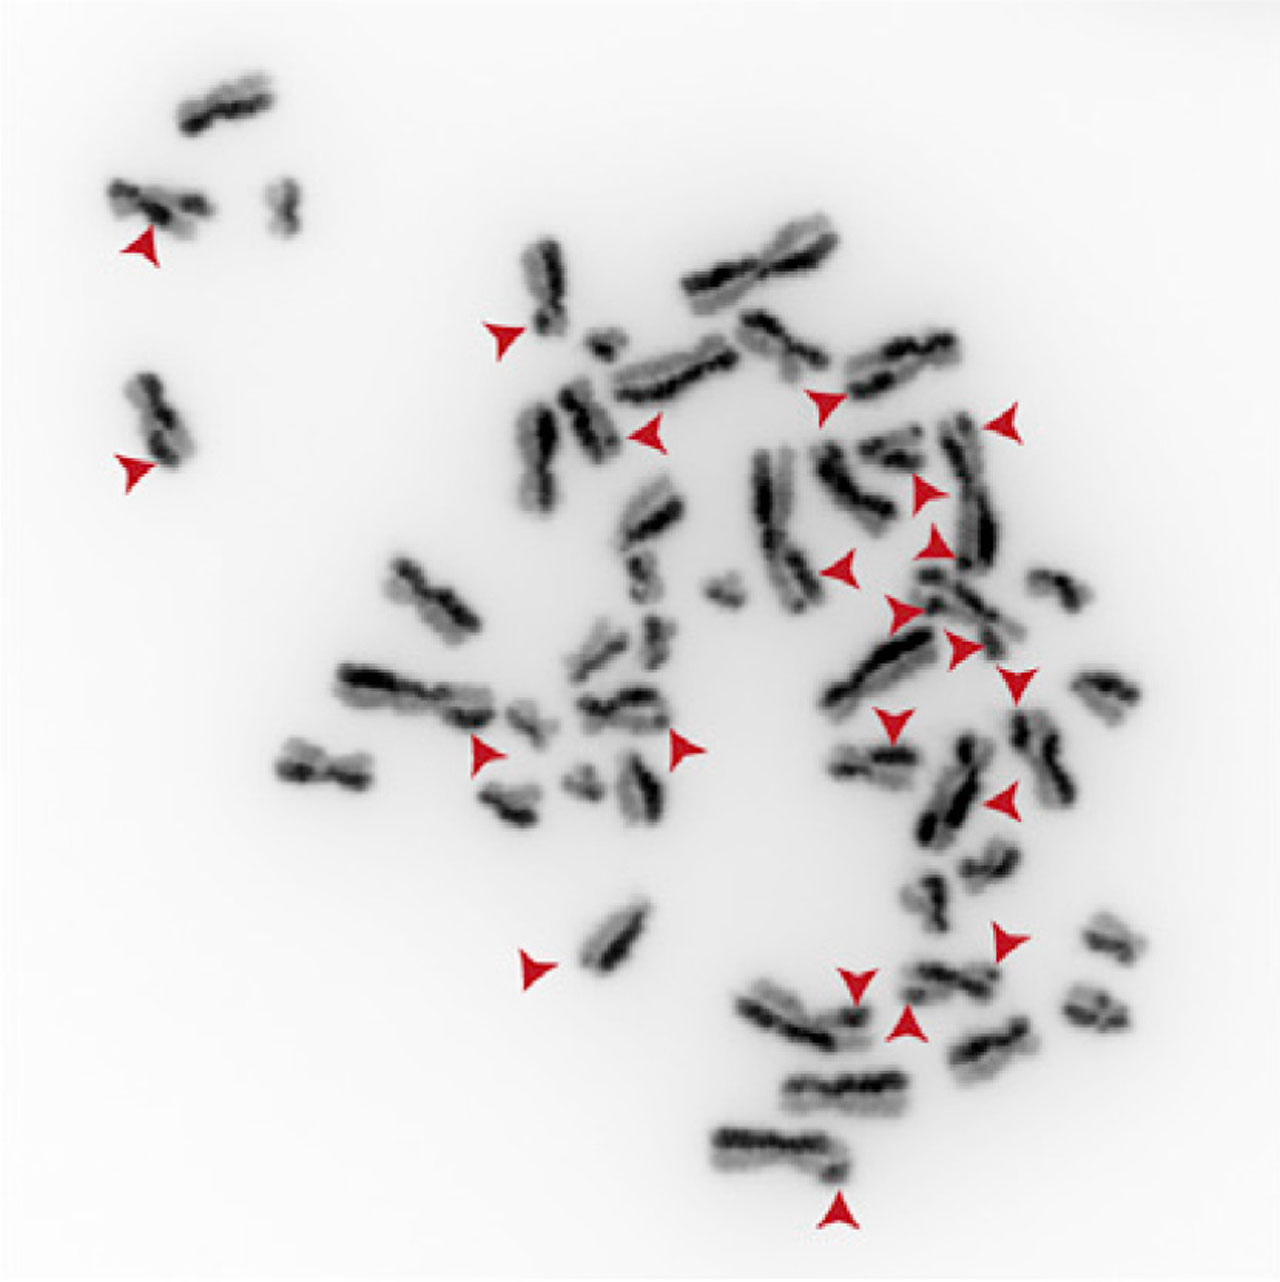 Cromosomas de células con mutaciones en el gen TOP3A que presentan numerosos intercambios SCE (Sister chromatid exchange). 